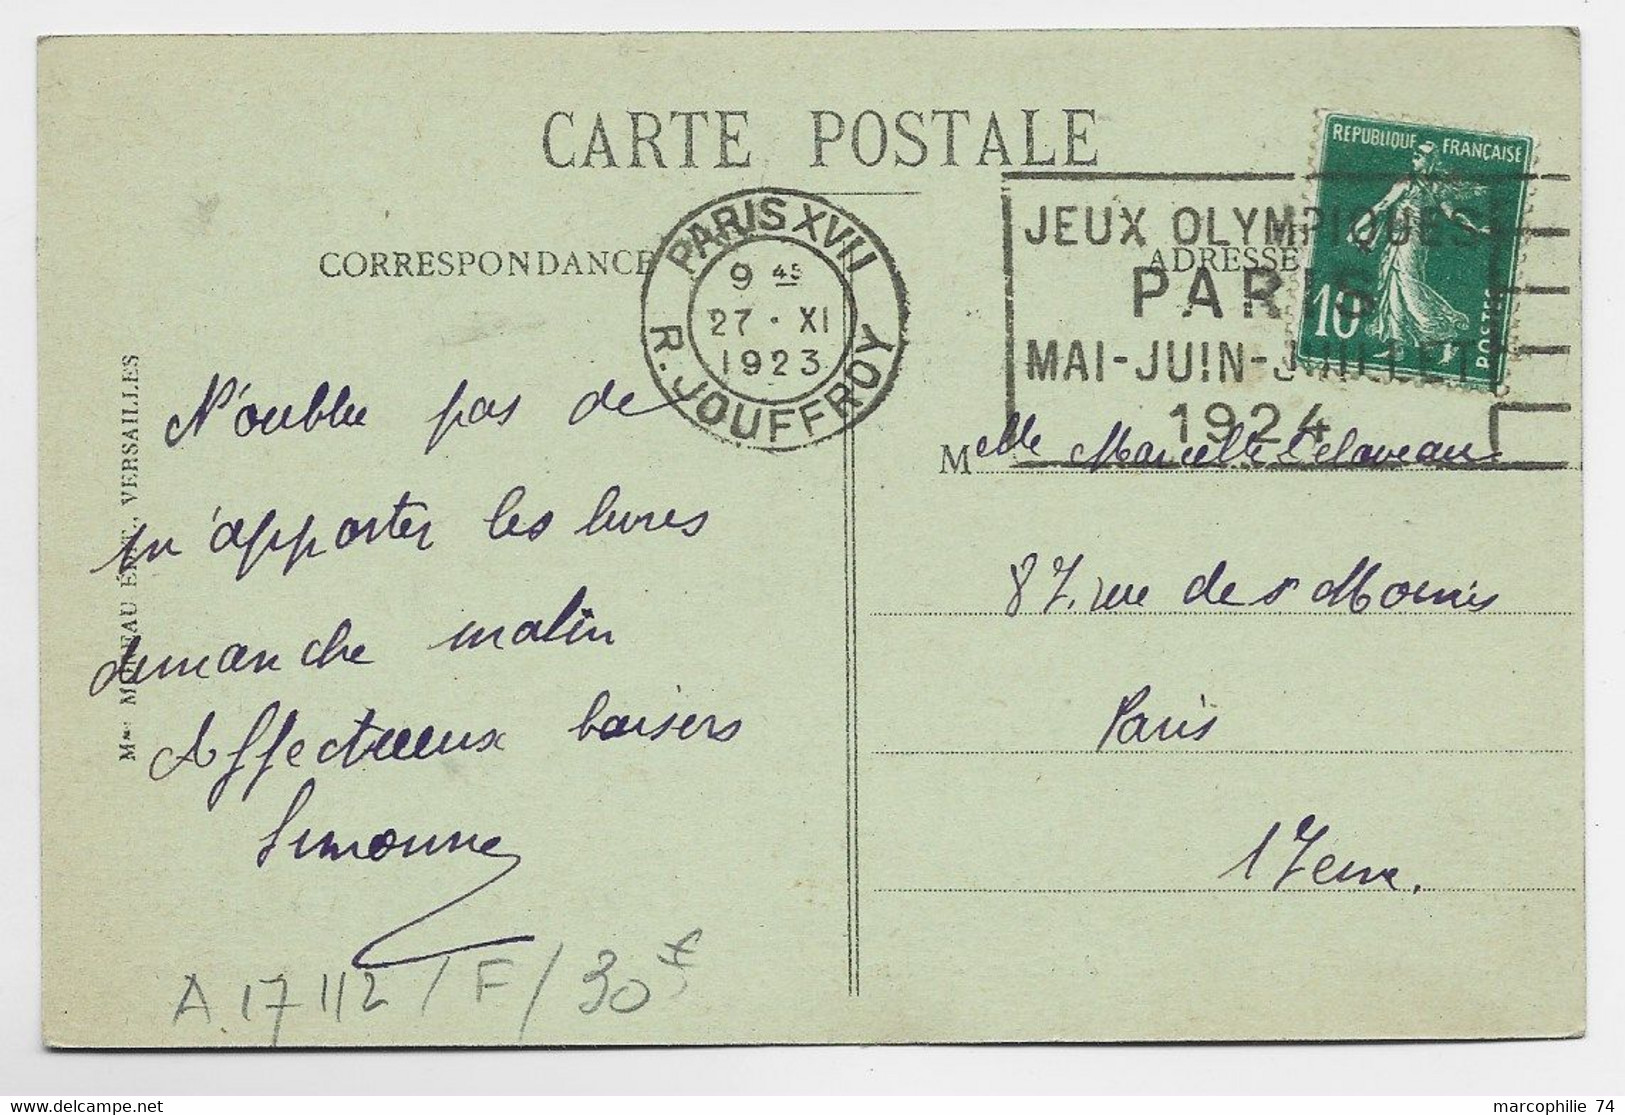 FRANCE SEMEUSE 10C CARTE MEC FLIER JEUX OLYMPIQUES PARIS R JOUFFROY 27.XI.1923 COTE 30€ - Zomer 1924: Parijs